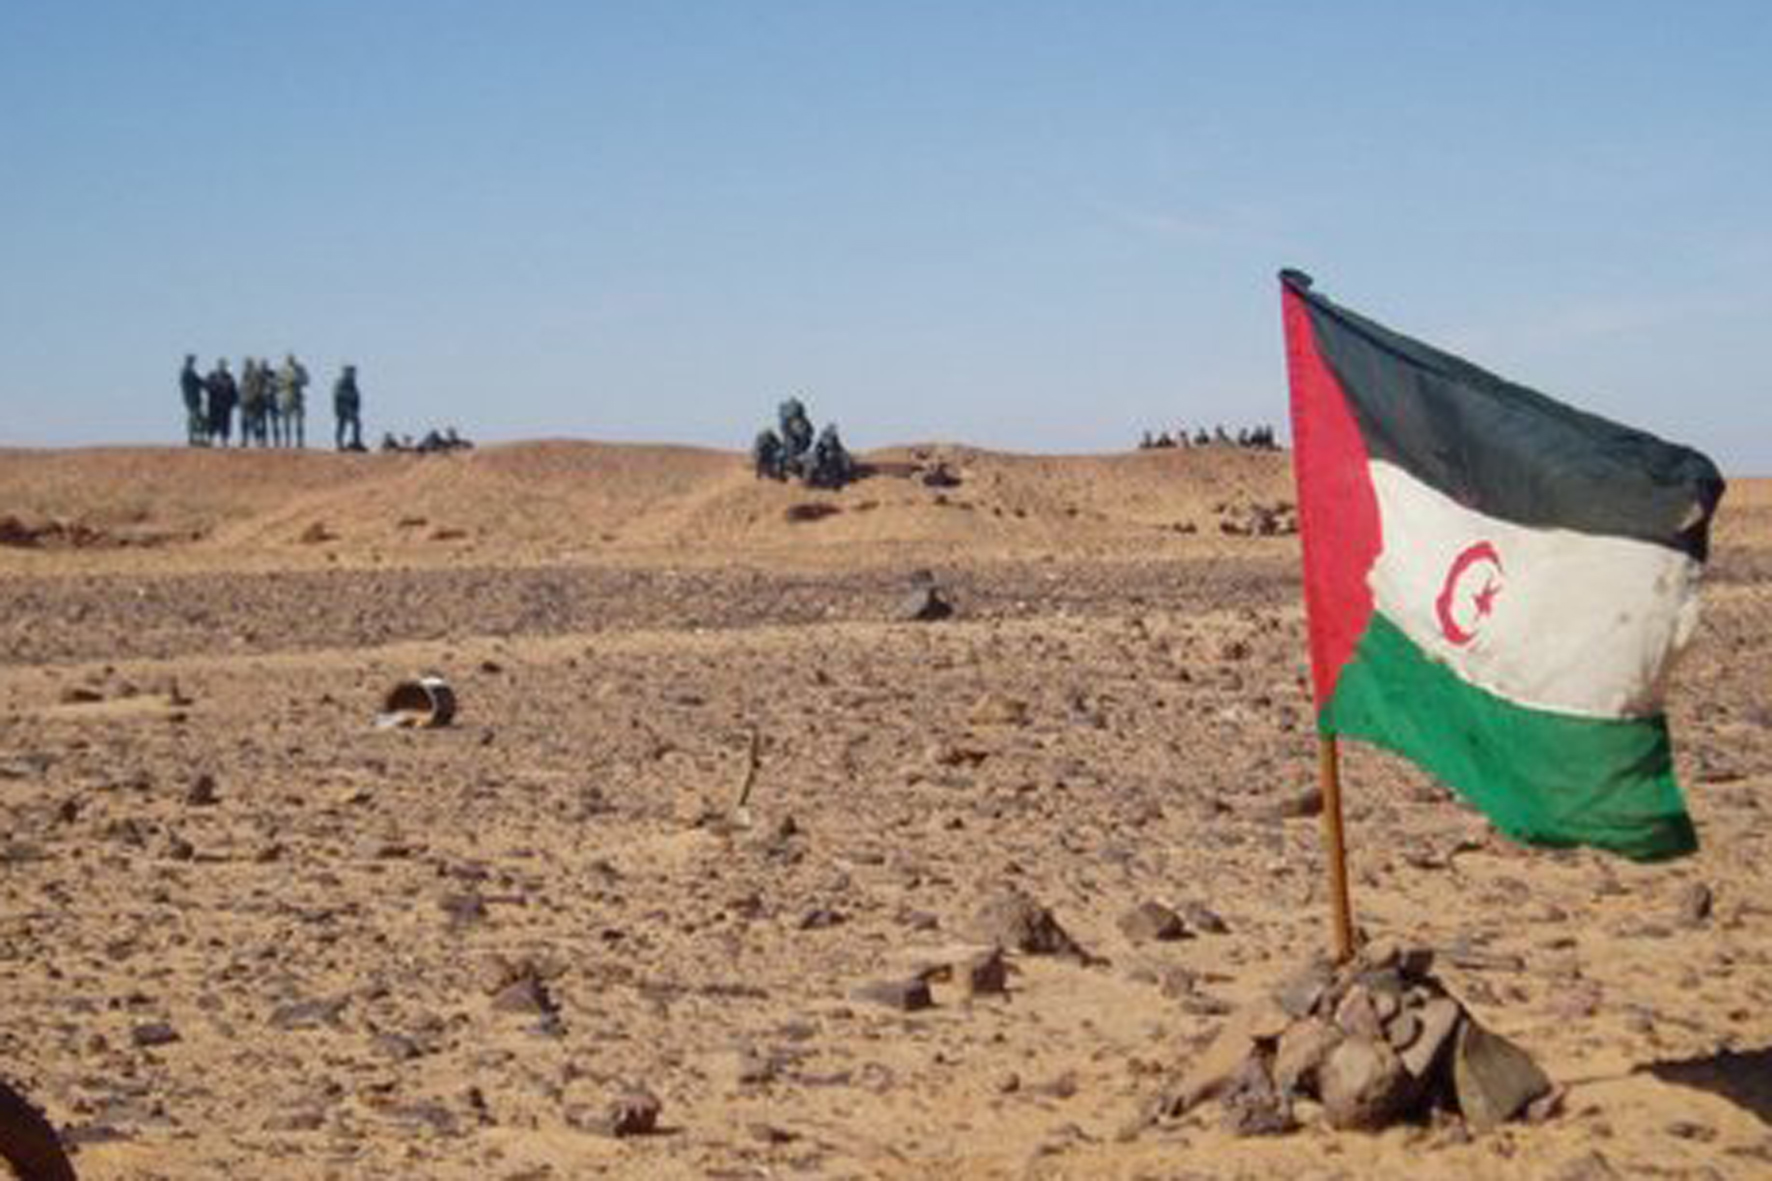 El Cabildo dará traslado al Gobierno de la Moción aprobada por la institución relativa al cumplimiento de la legalidad internacional en el Sáhara Occidental